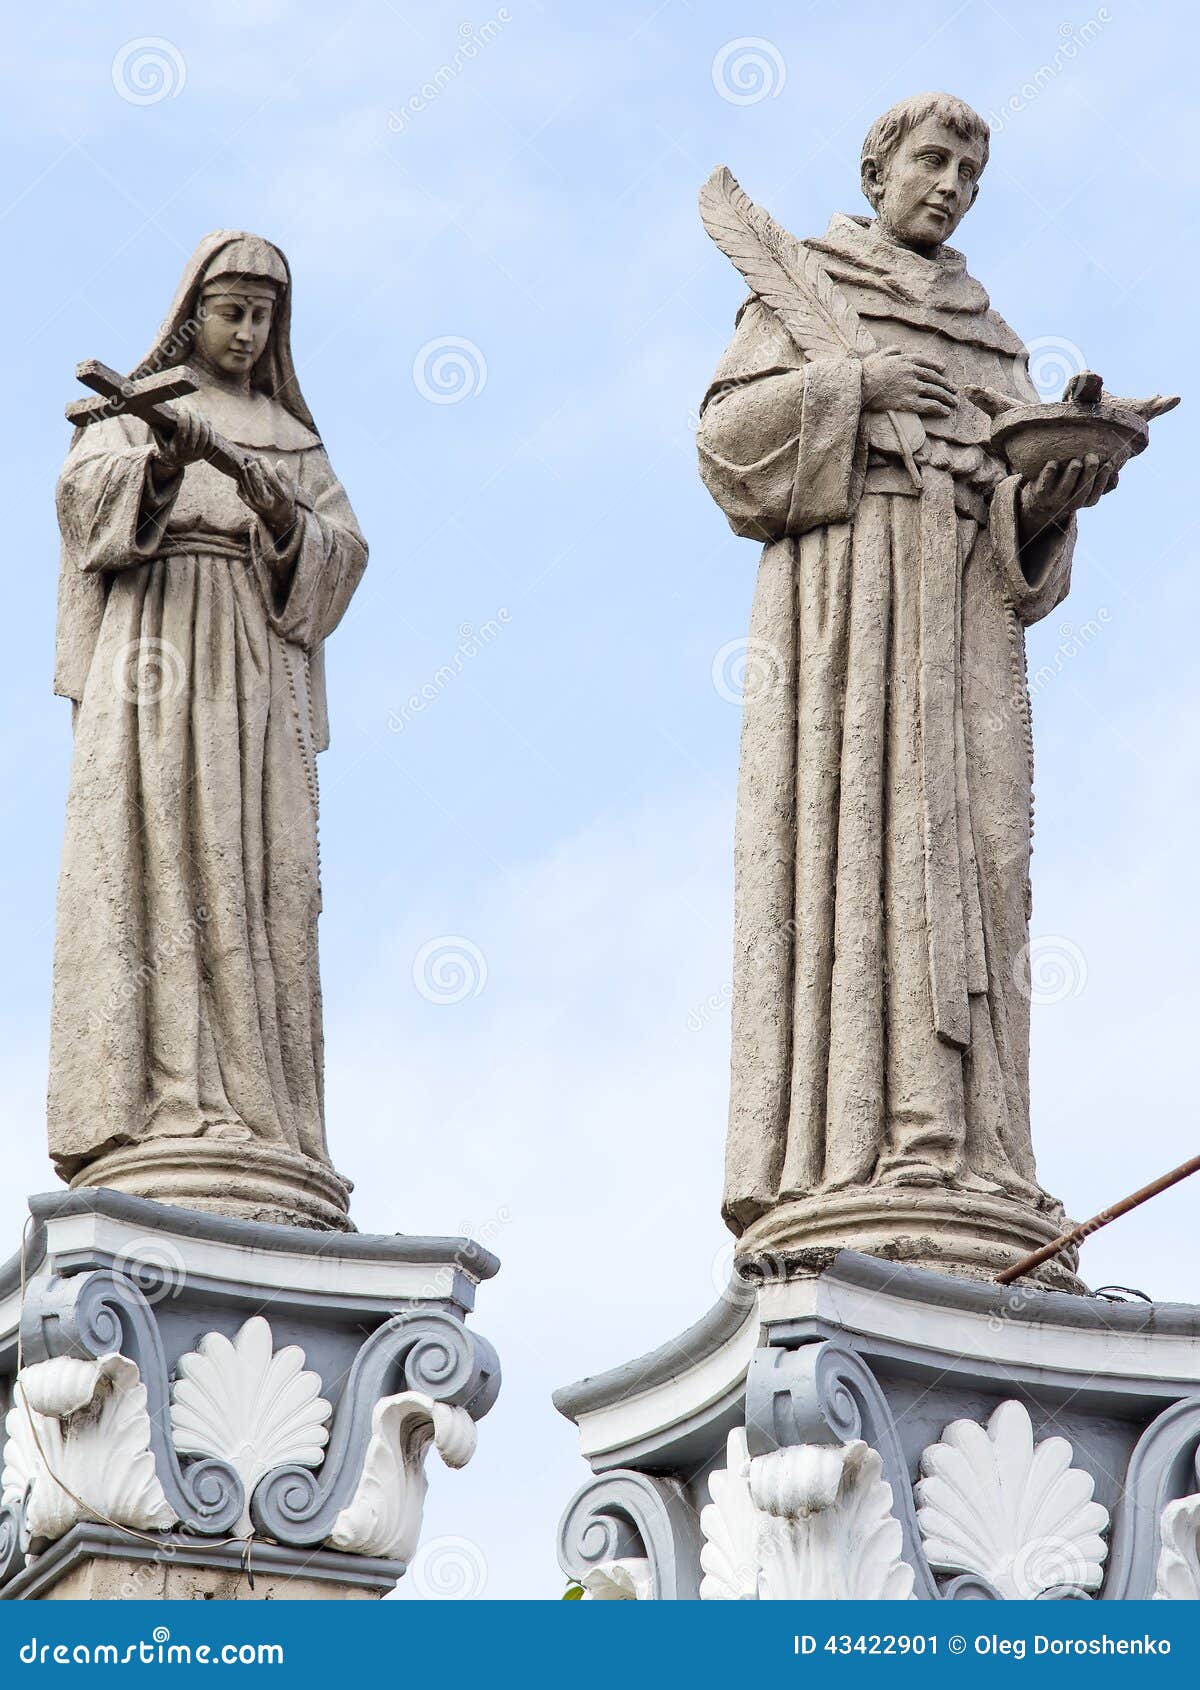 statue in basilica del santo nino. cebu, philippines.